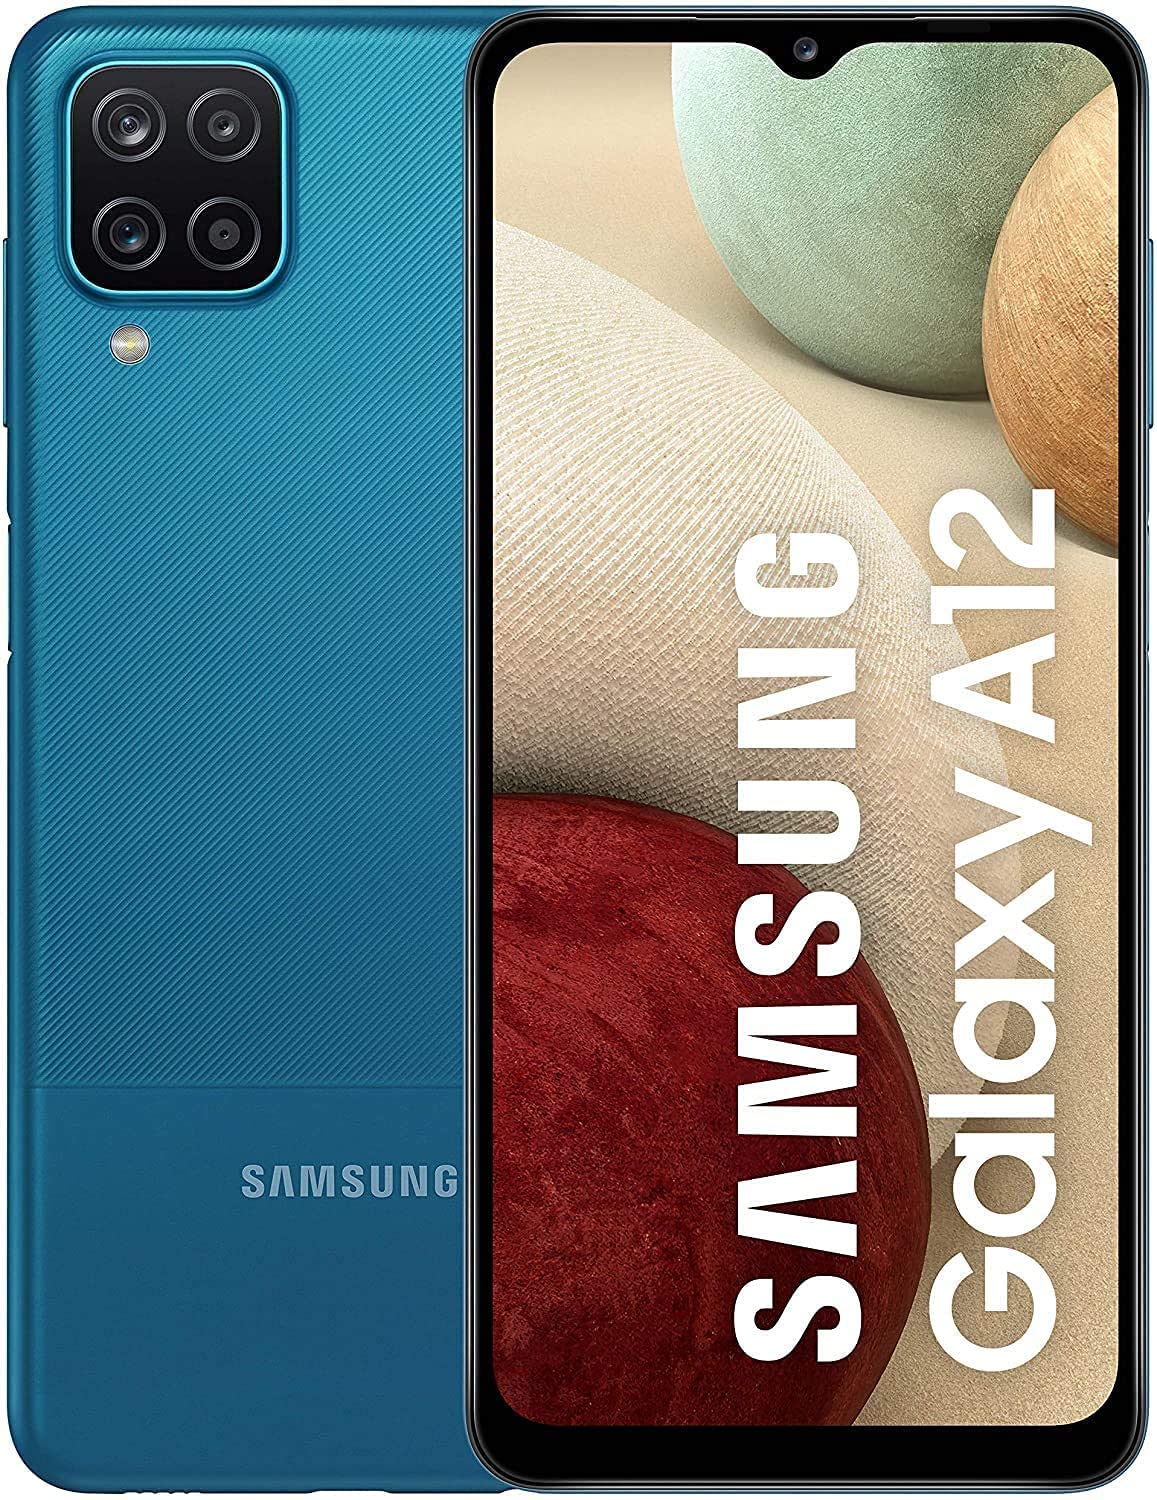 Samsung Galaxy A12 64GB BLUE